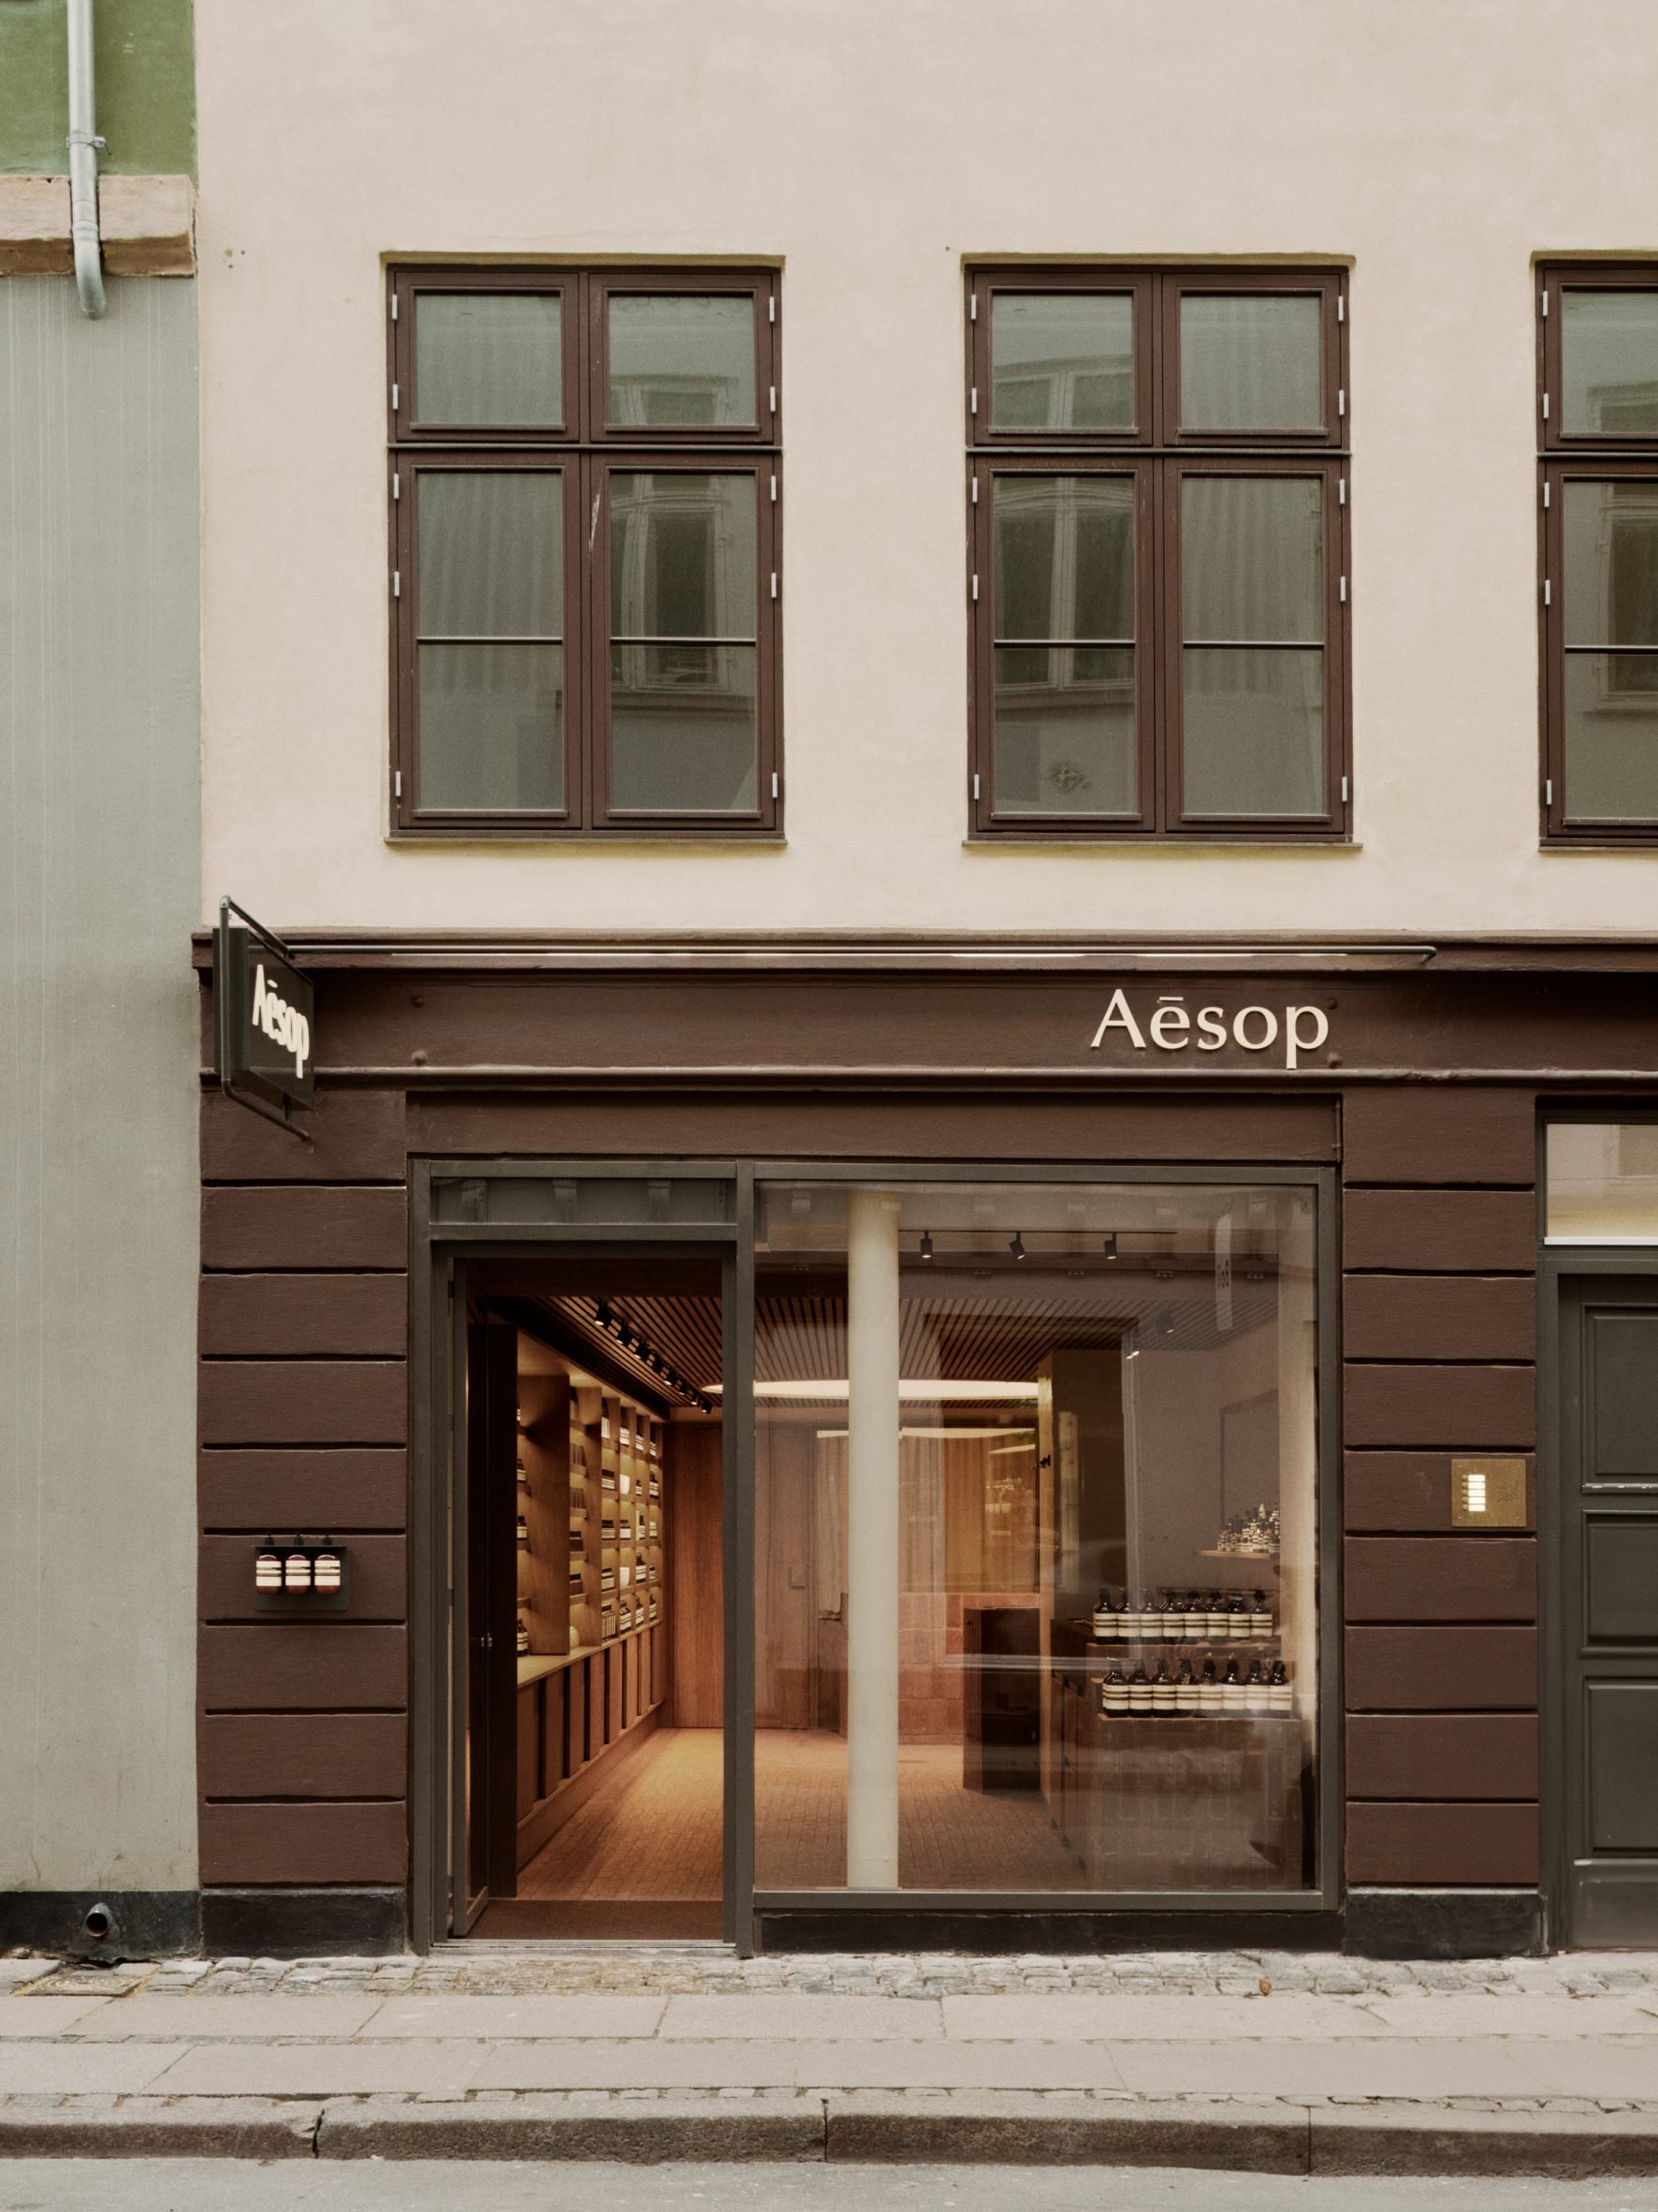 The facade of an Aesop store in Copenhagen